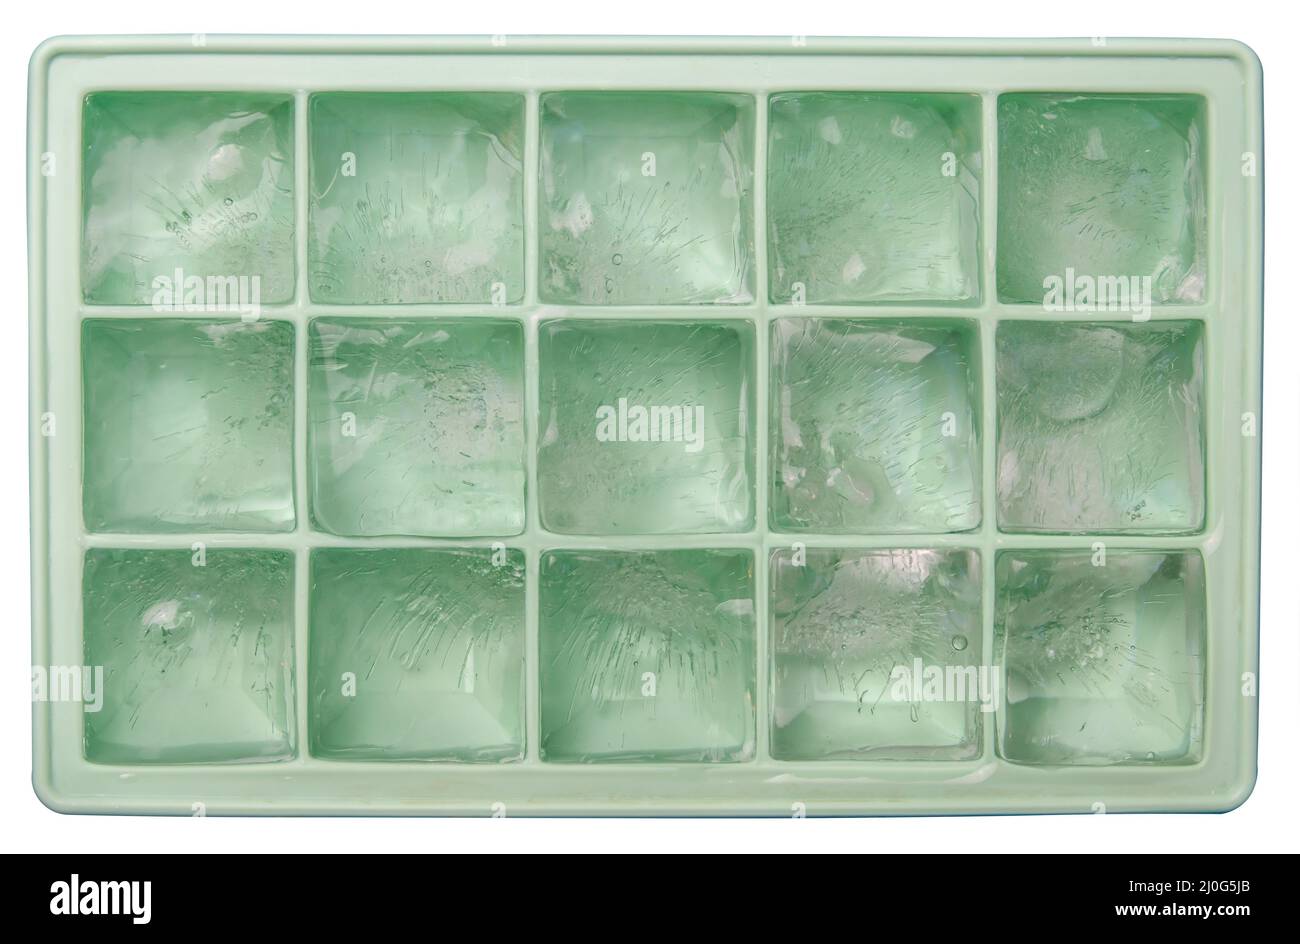 Isolated Ice Tray Stock Photo